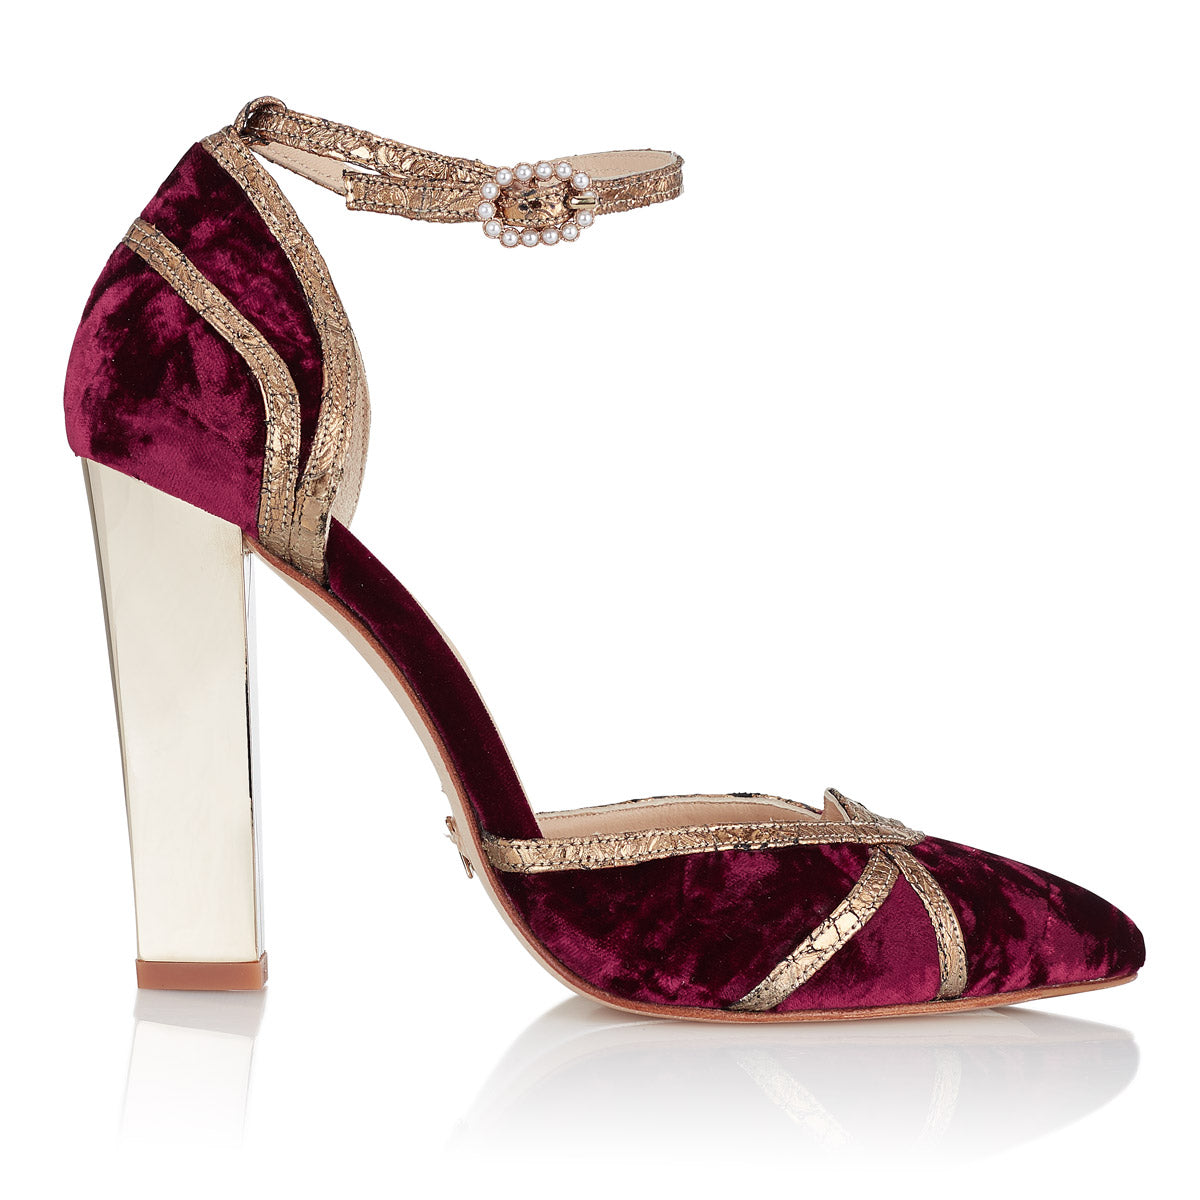 Zapatos Moulin Rouge de terciopelo vinotinto - Just - Just-ENE